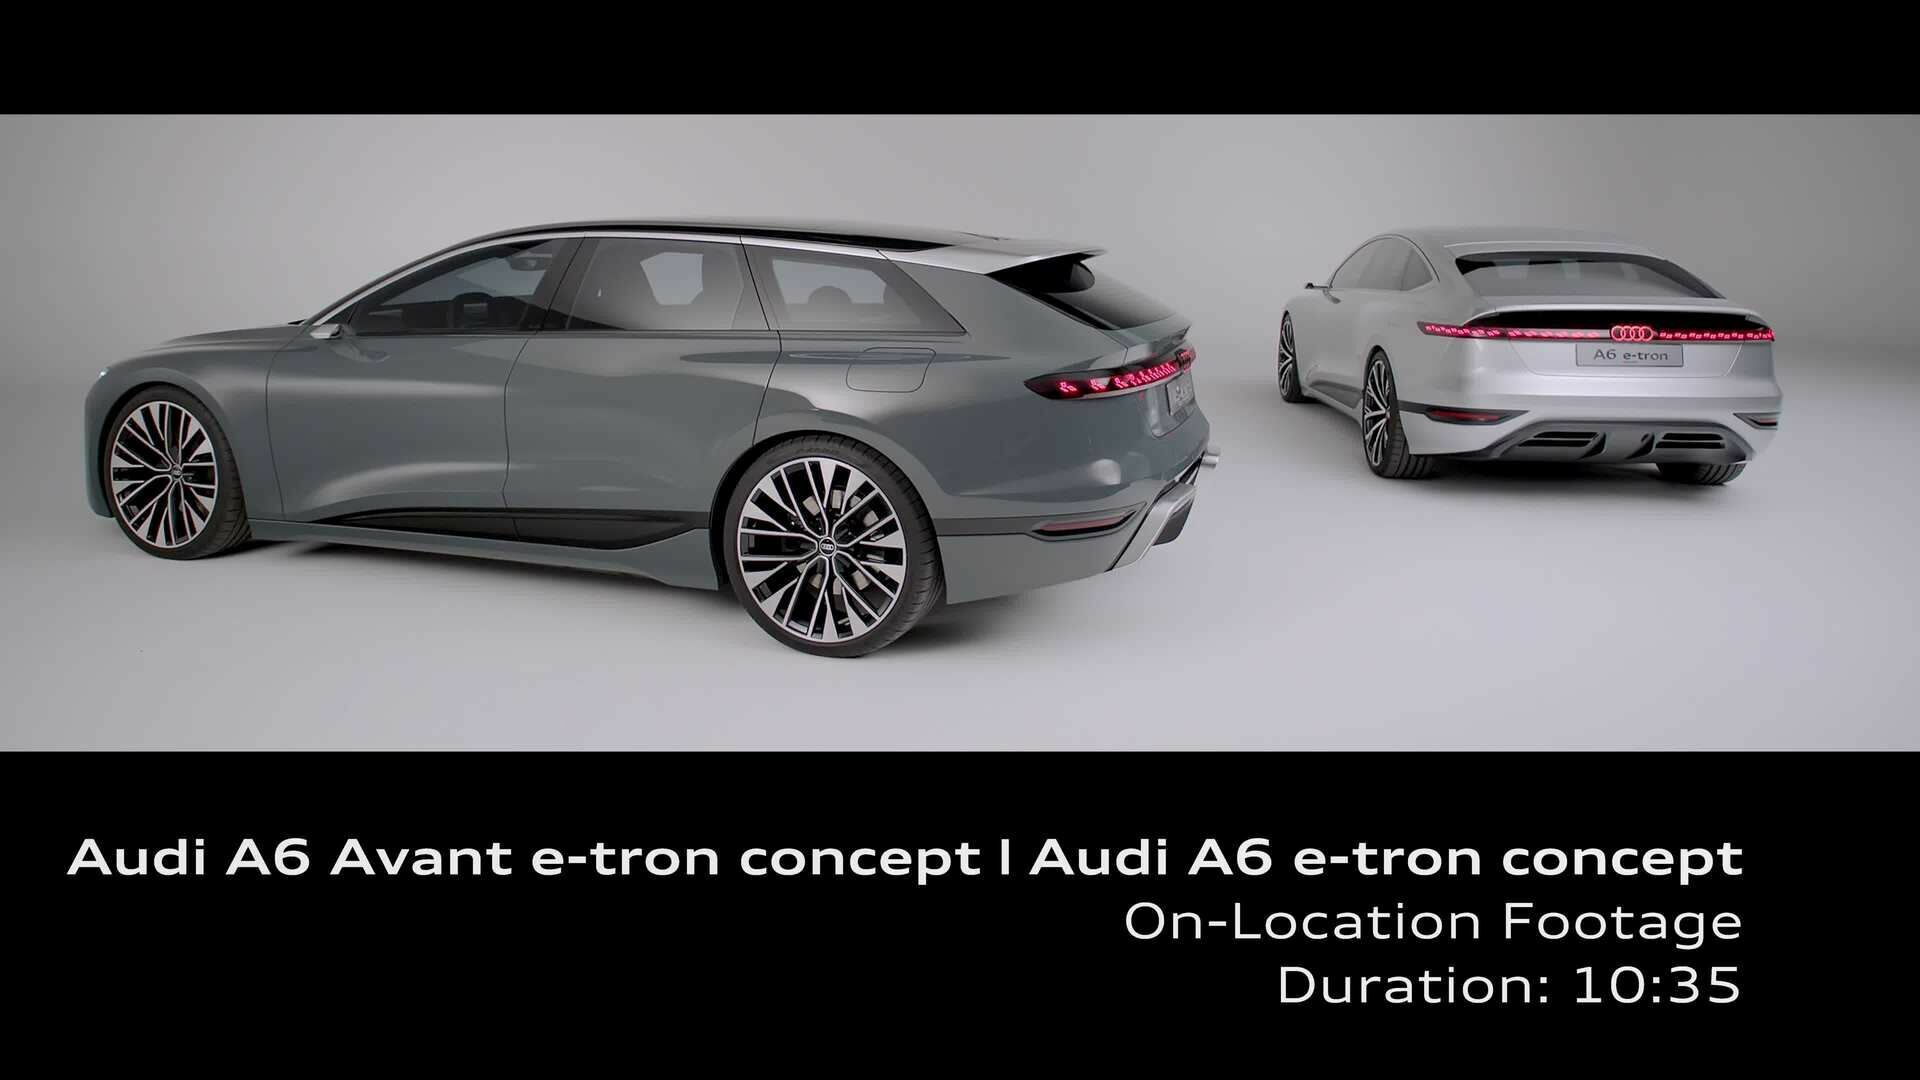 Footage: Audi A6 Avant e-tron concept & Audi A6 e-tron concept (On-Location)